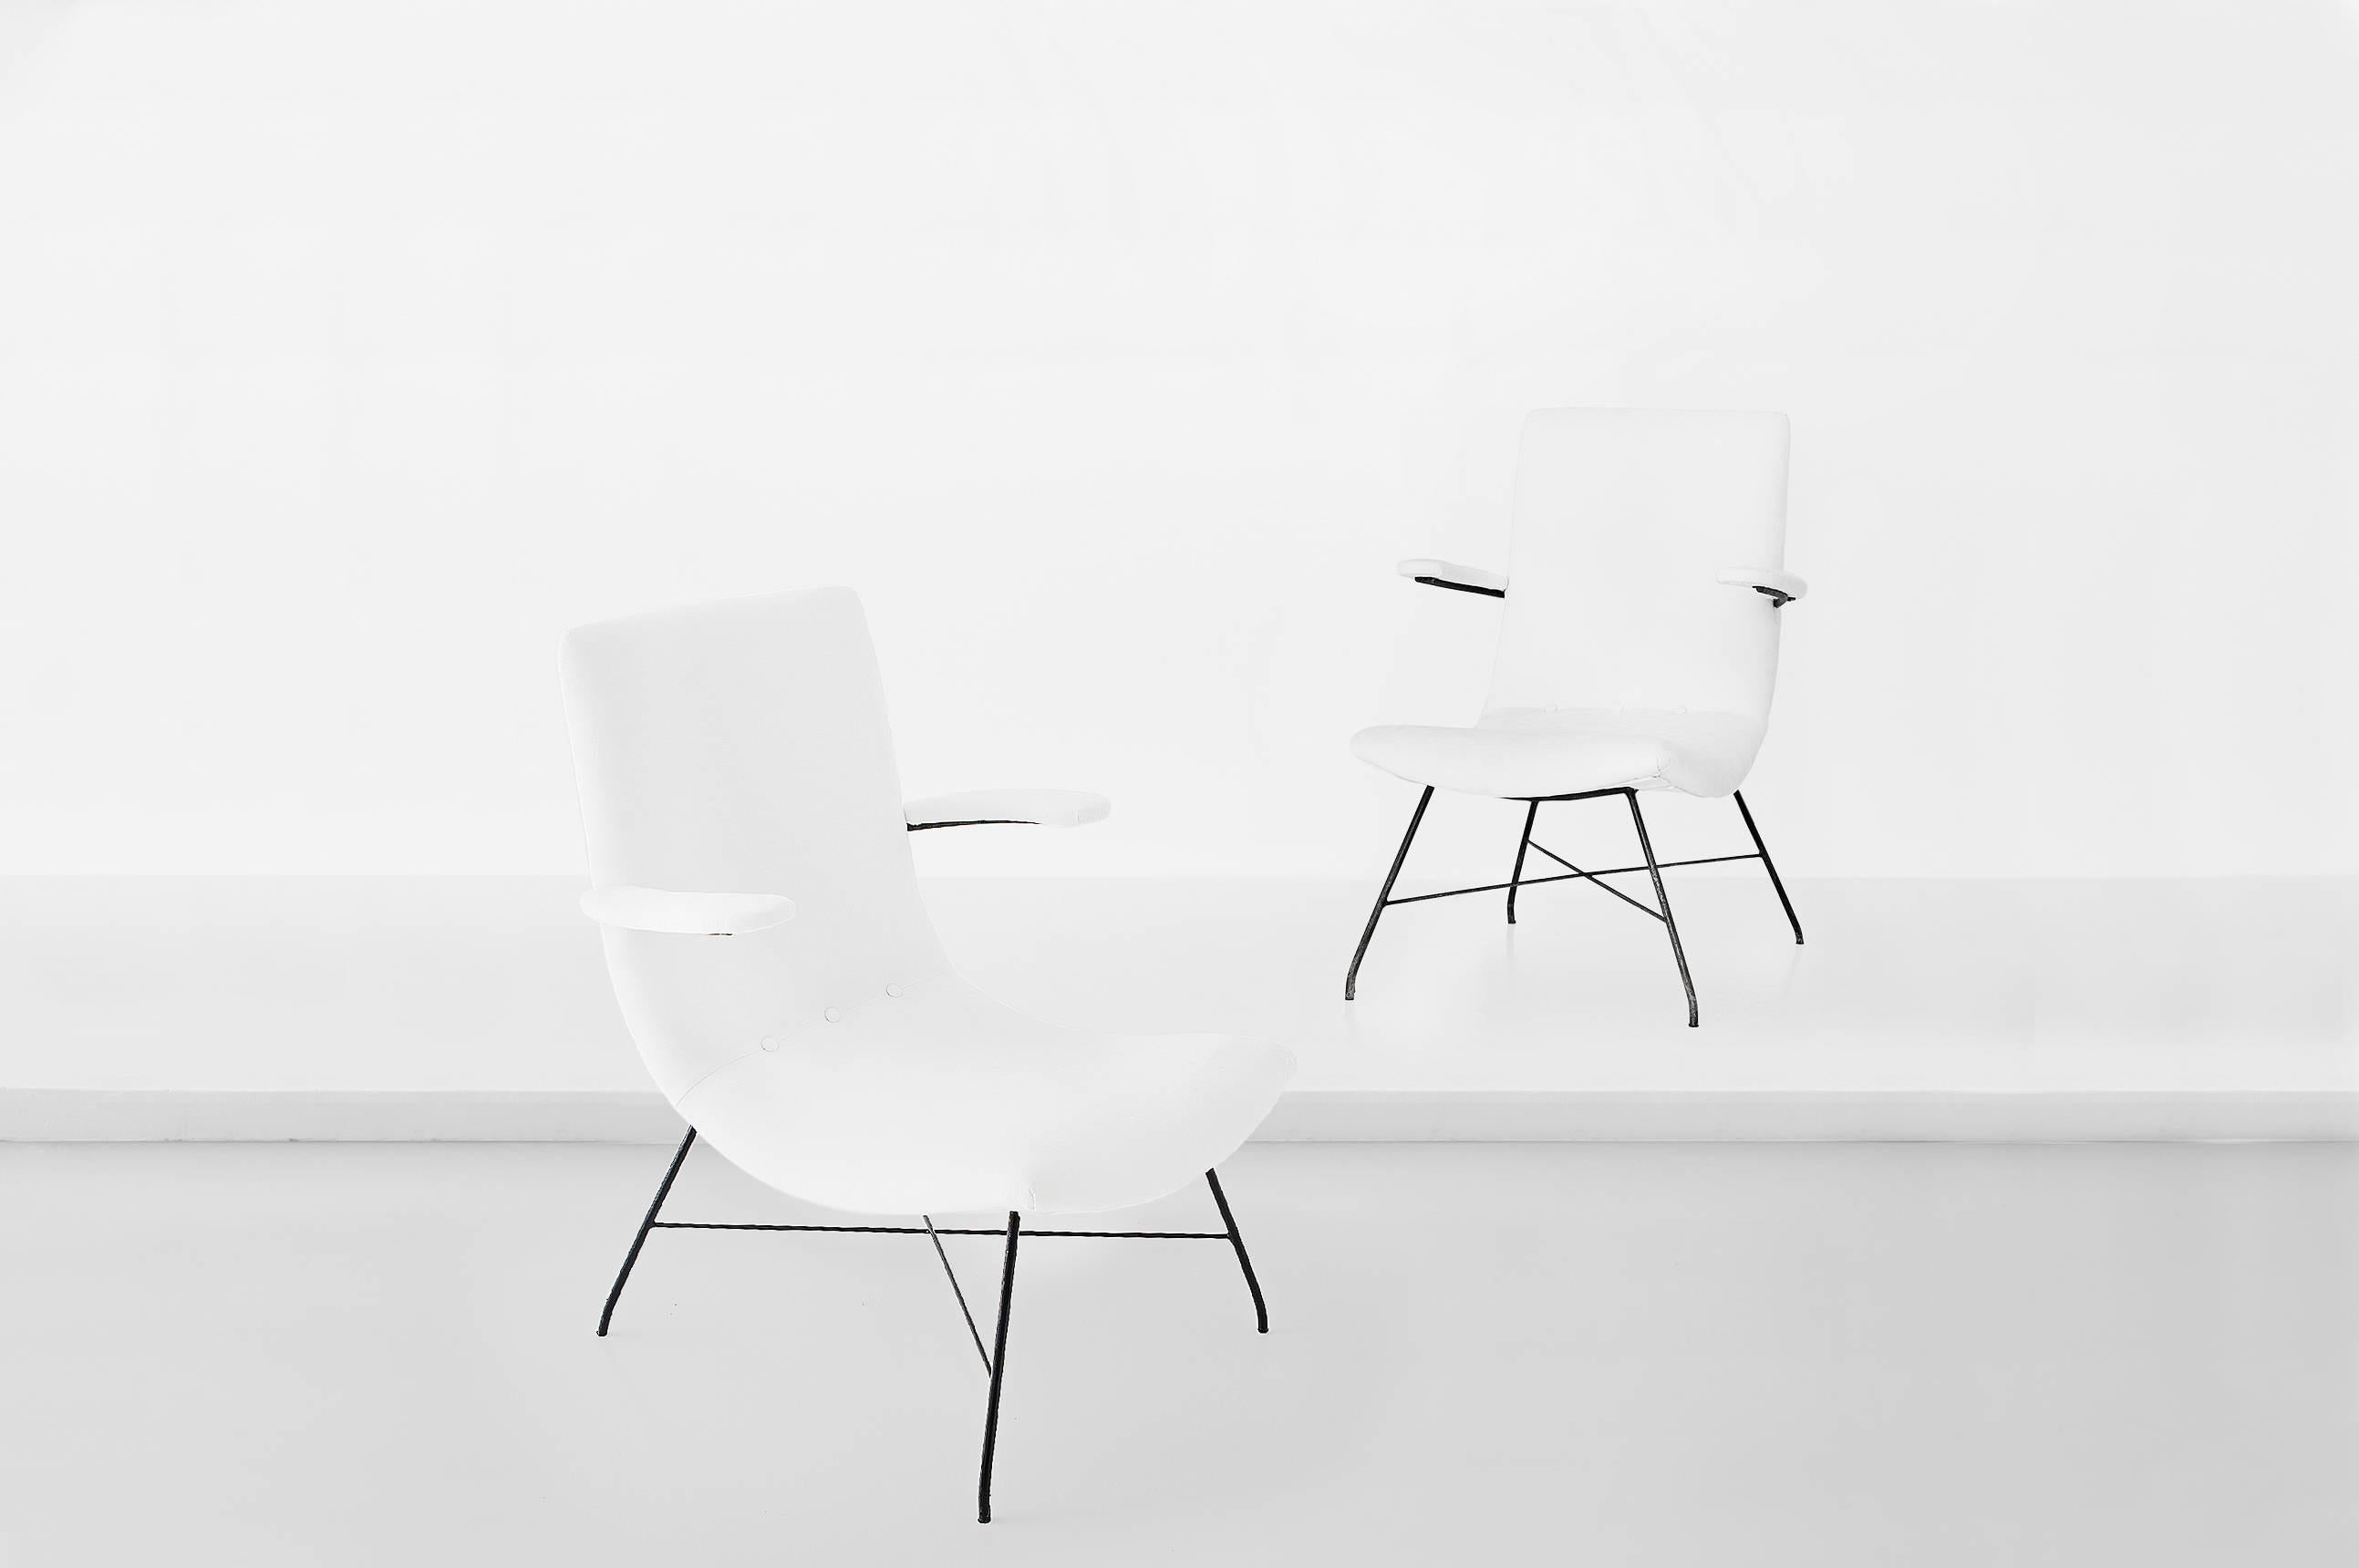 Martin Eisler (1913-1977) & Carlos Hauner (1927-1997)

Paire de chaises longues
Fabriqué par Forma Moveis
Brésil, années 1950
Métal peint en noir, revêtement en tissu

Mesures
65 cm x 64 cm x 90 H cm.
25.5 po x 25 po x 35,4 po